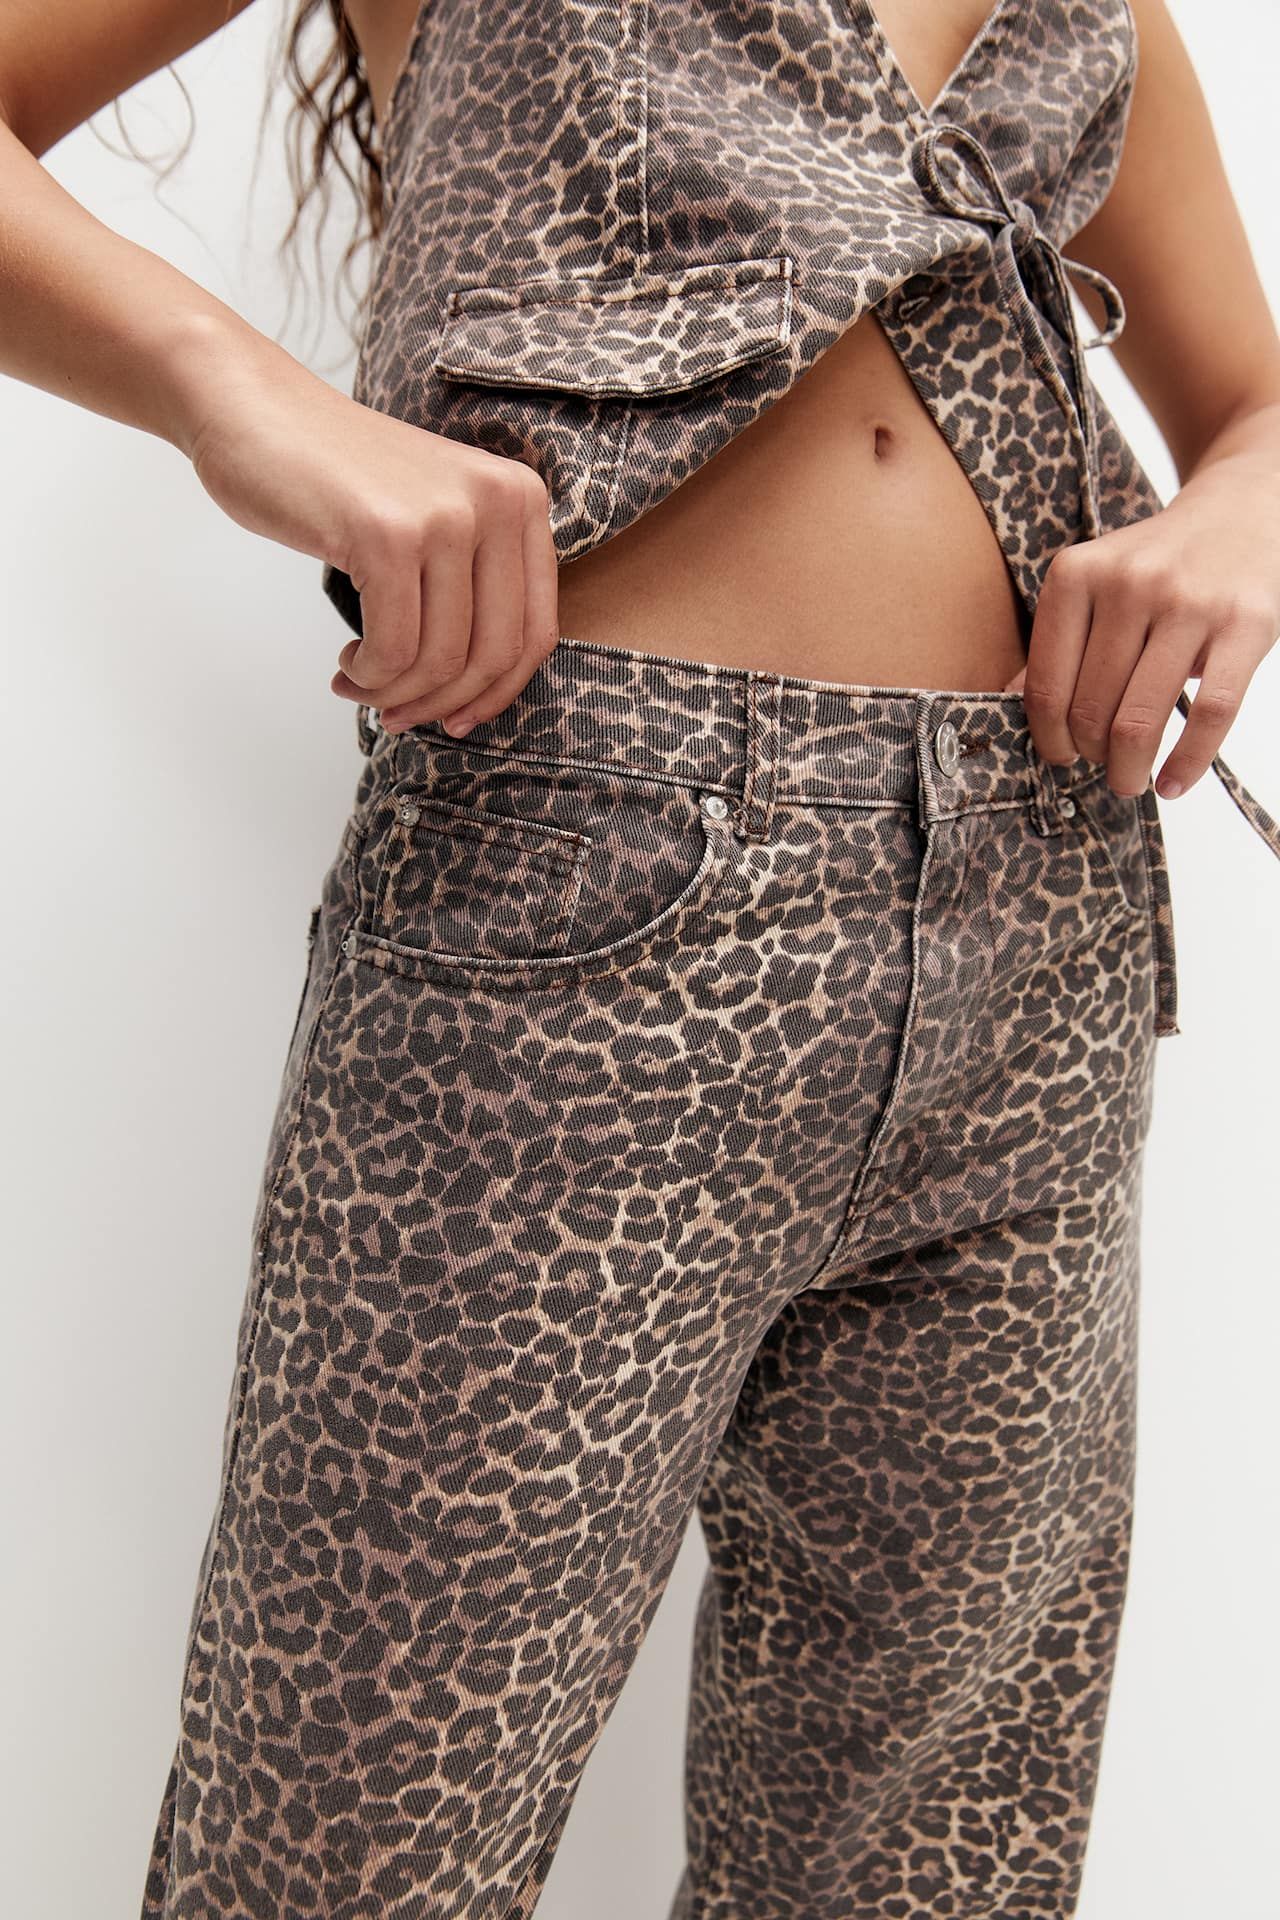 Pantalon straight léopard | PULL and BEAR FR